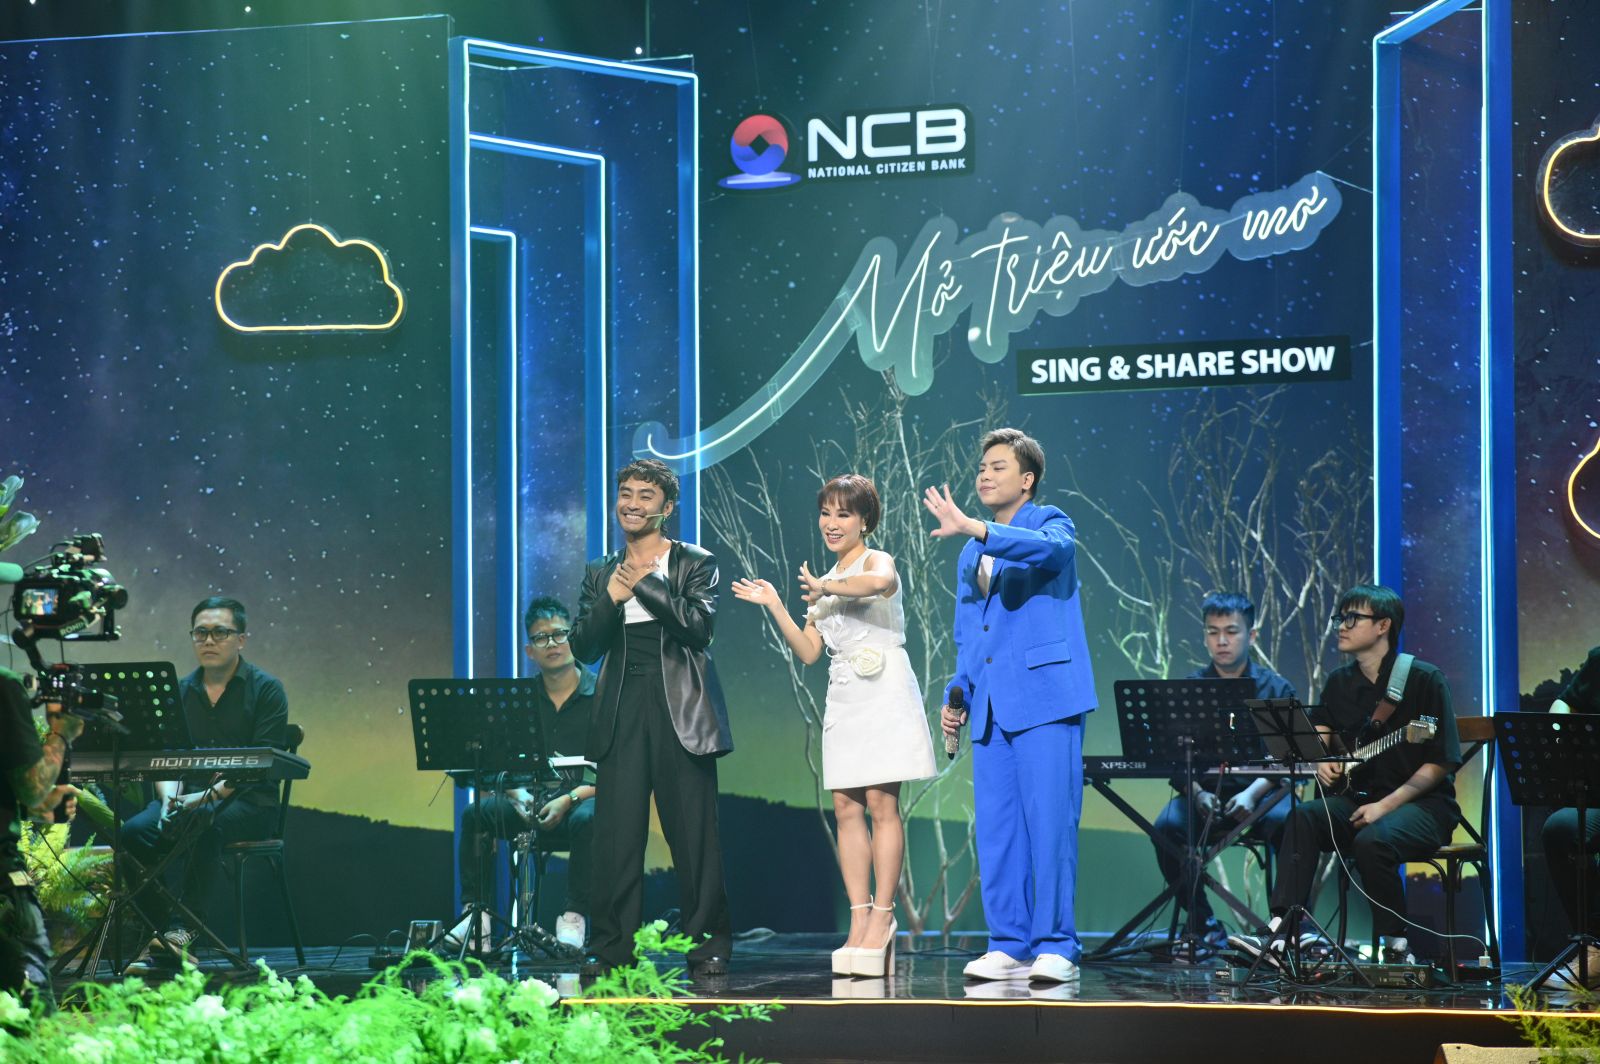 “NCB Sing & Share Show - Mở triệu ước mơ” chia sẻ thông điệp nhân văn, tiếp thêm động lực chắp cánh cho hàng triệu ước mơ Việt.